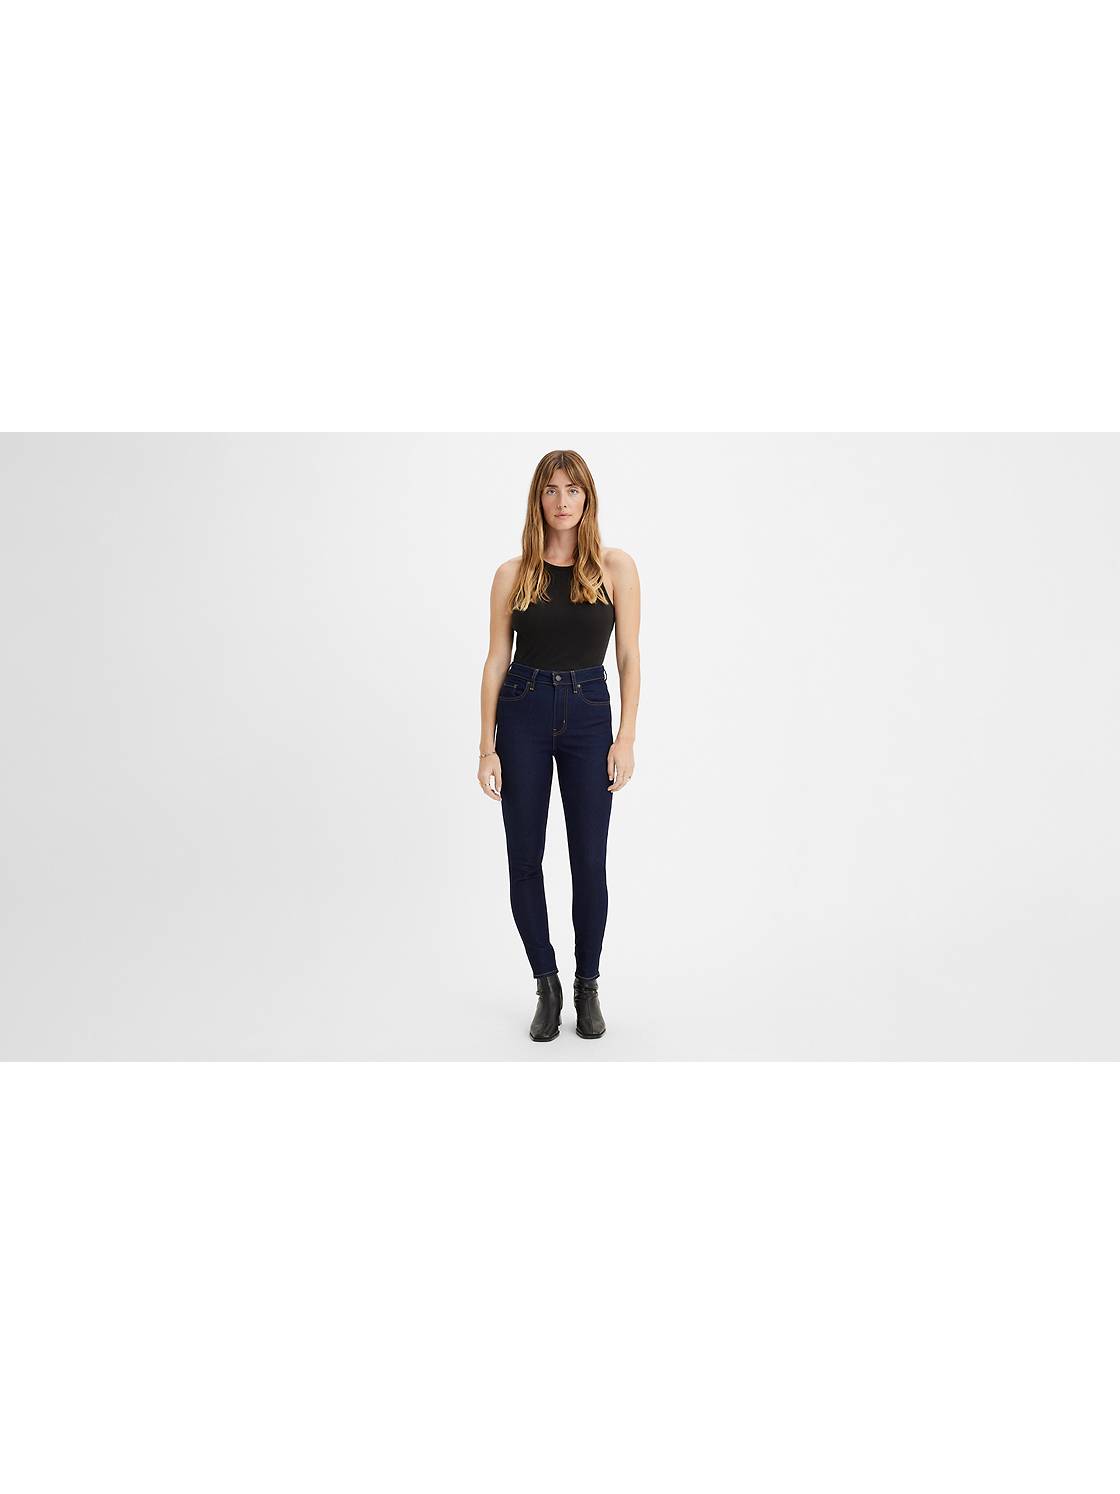 Buy Women's Skinny Tall Jeans Online